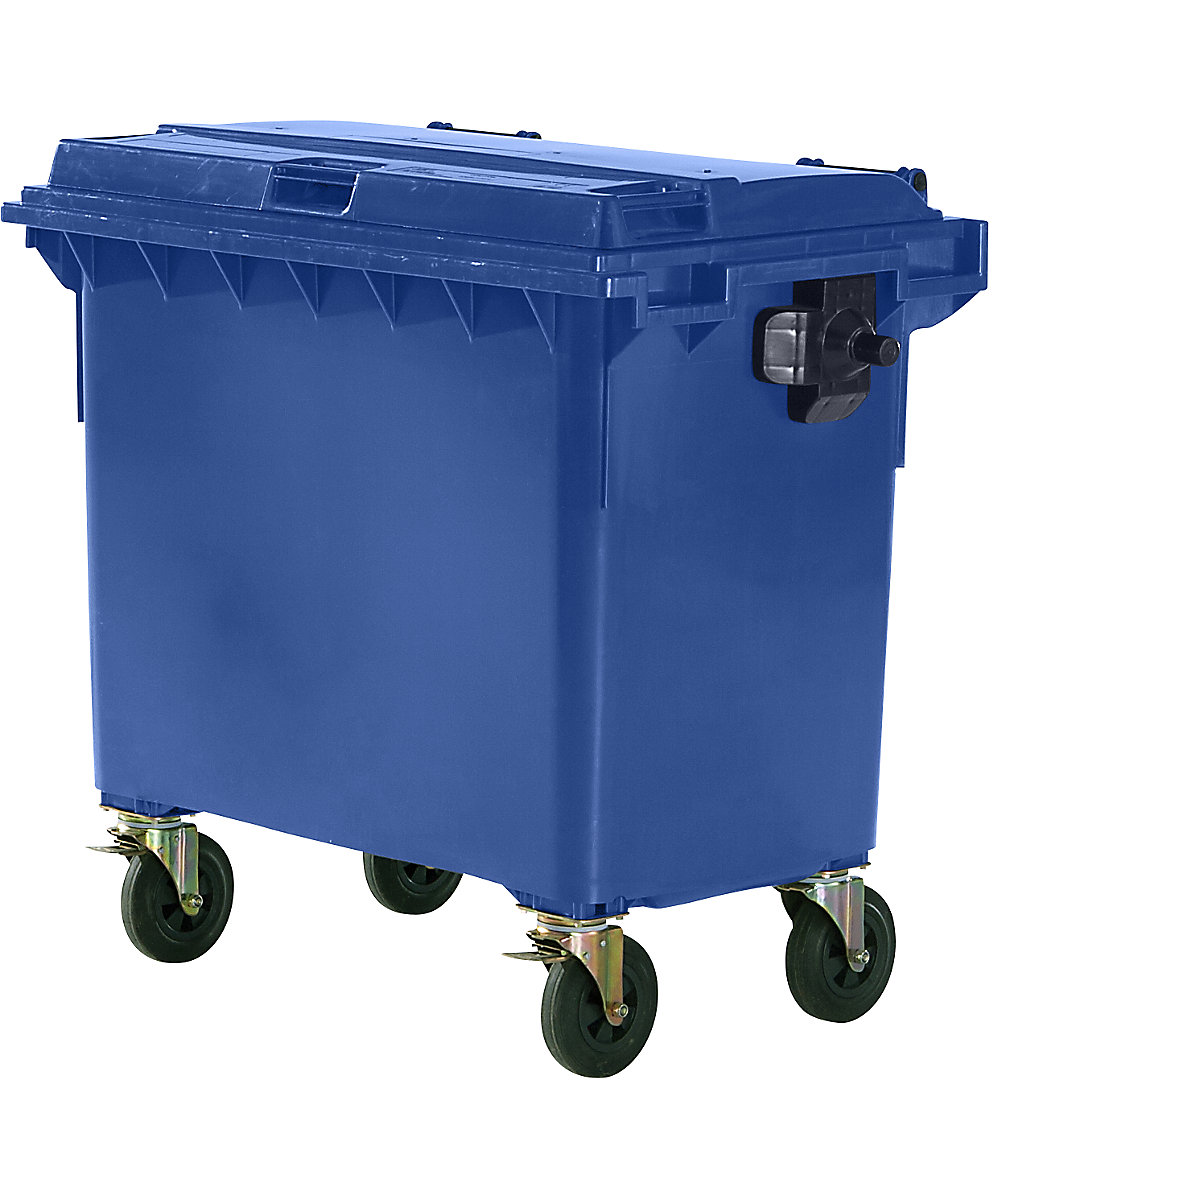 Müllcontainer aus Kunststoff, DIN EN 840, Volumen 660 l, BxHxT 1360 x 1235 x 765 mm, blau, ab 5 Stk-5